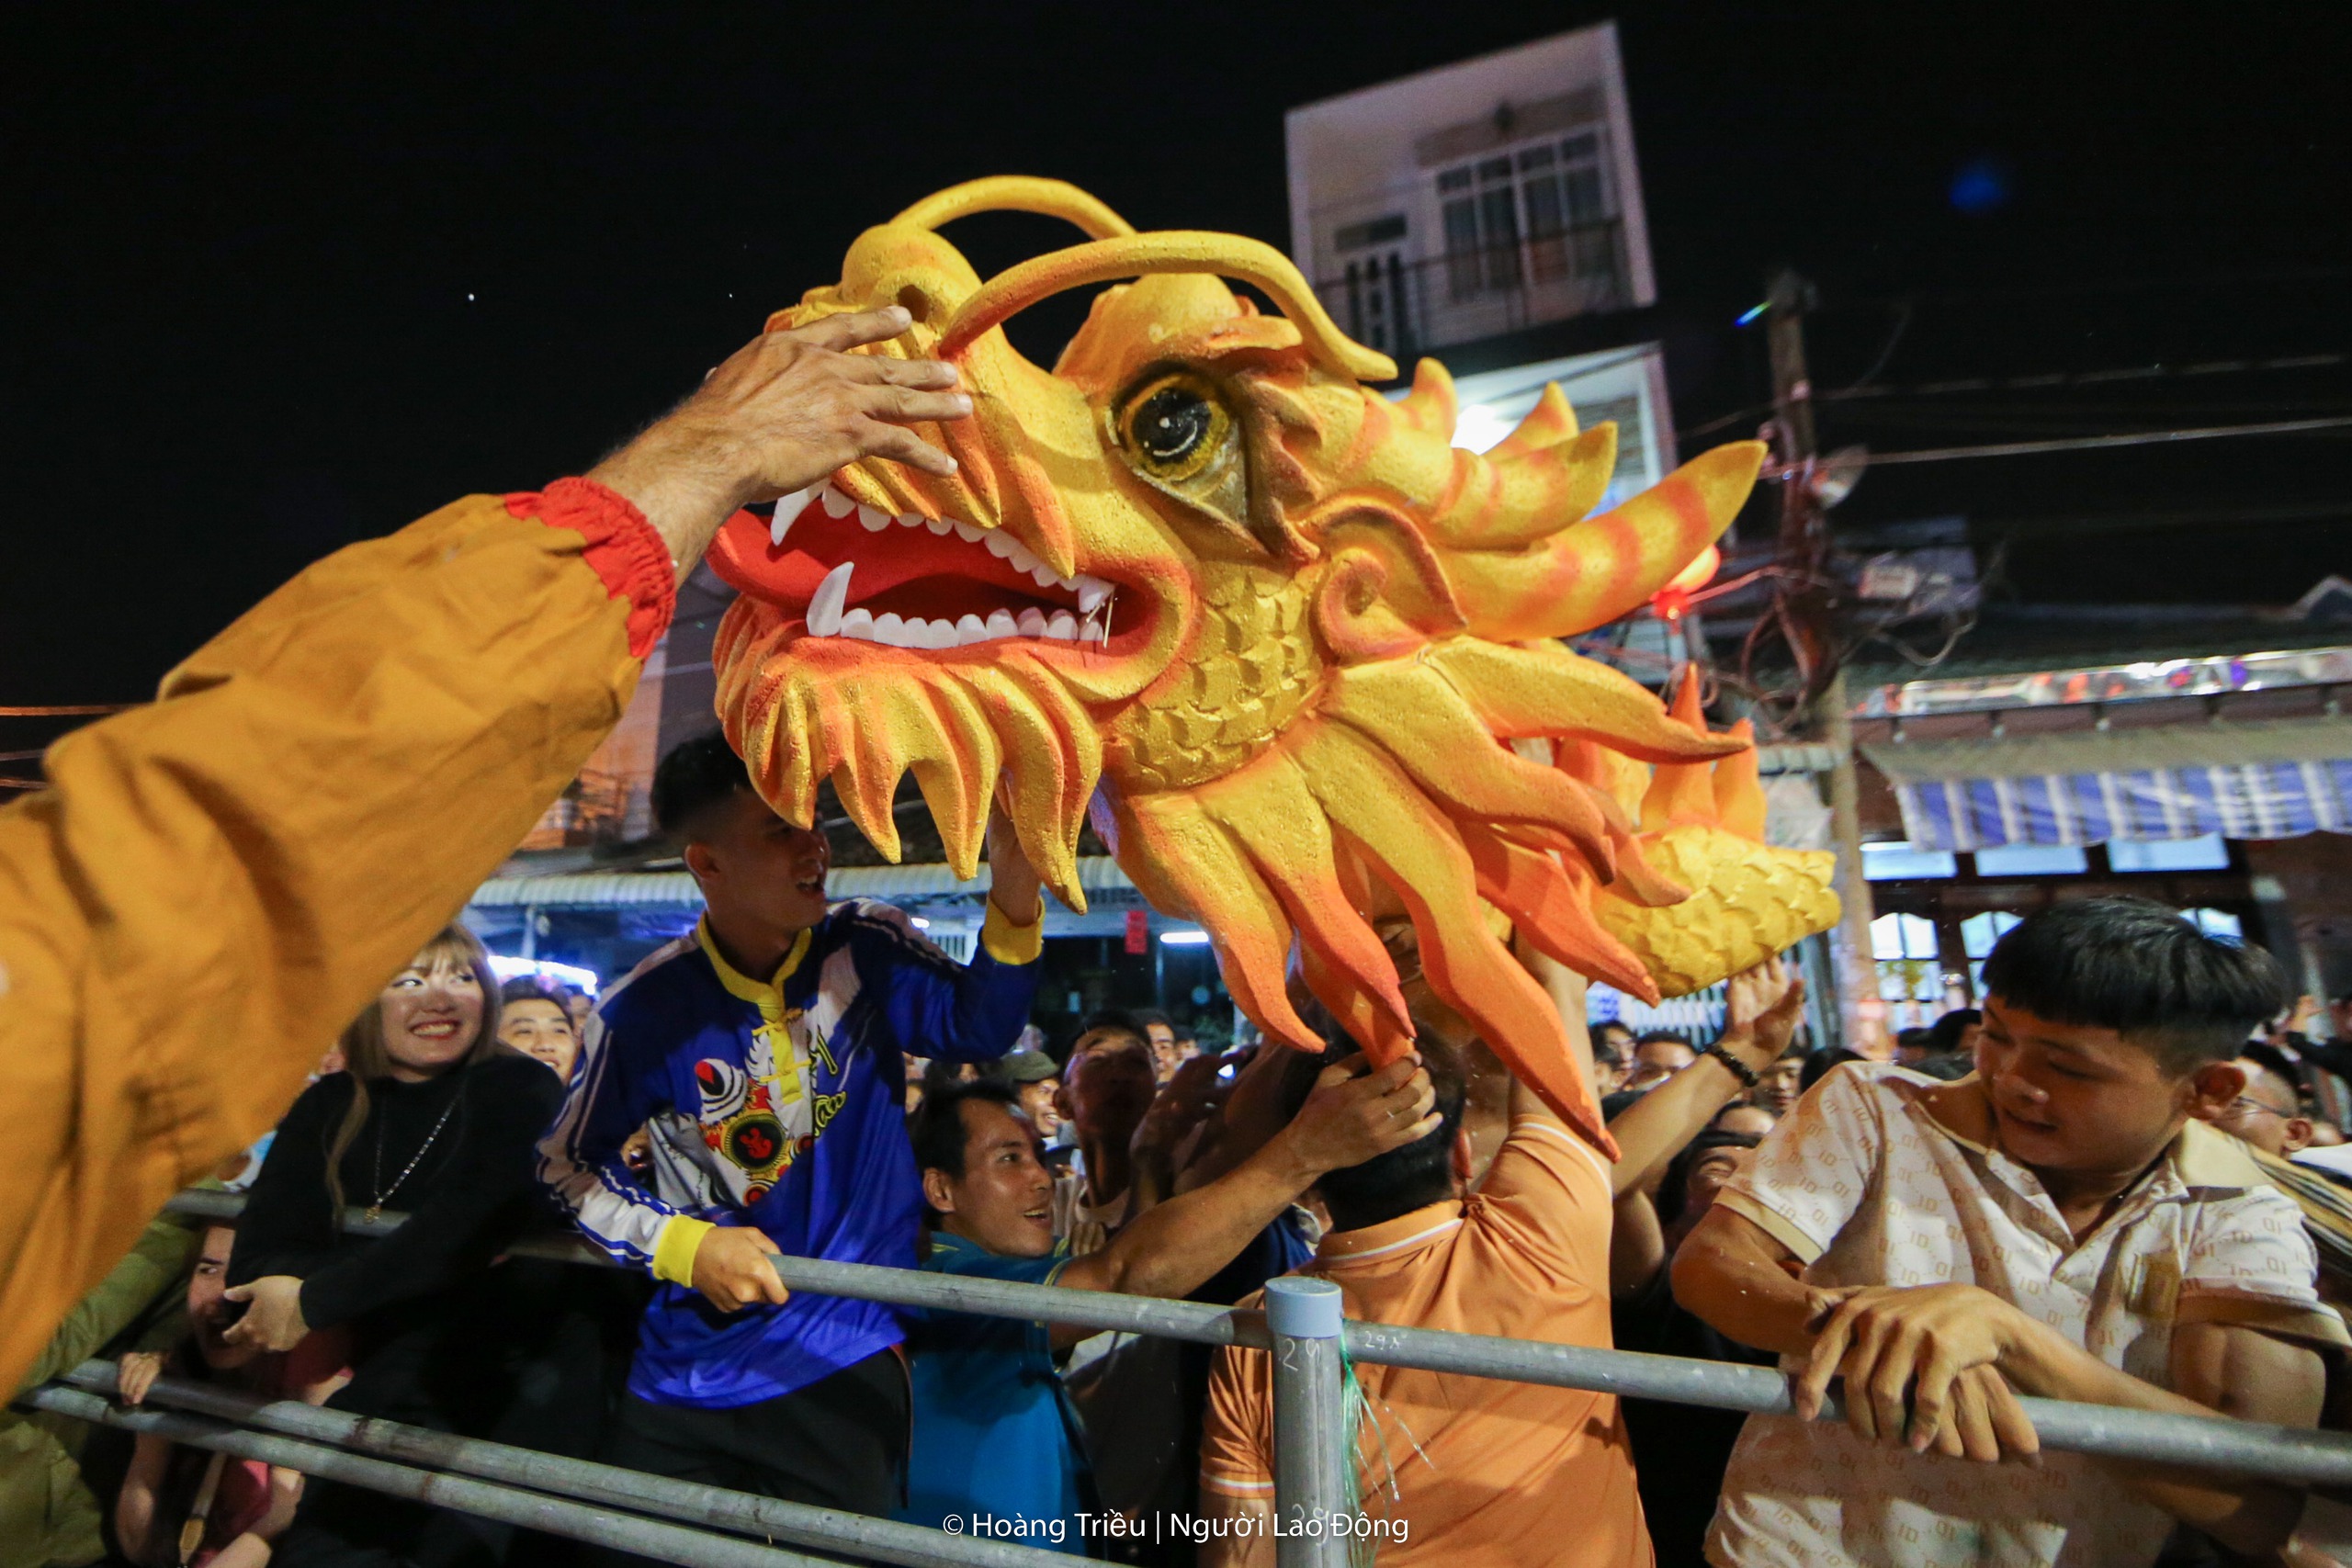 Hàng ngàn người tranh lộc trong đêm tại lễ hội Làm Chay- Ảnh 12.